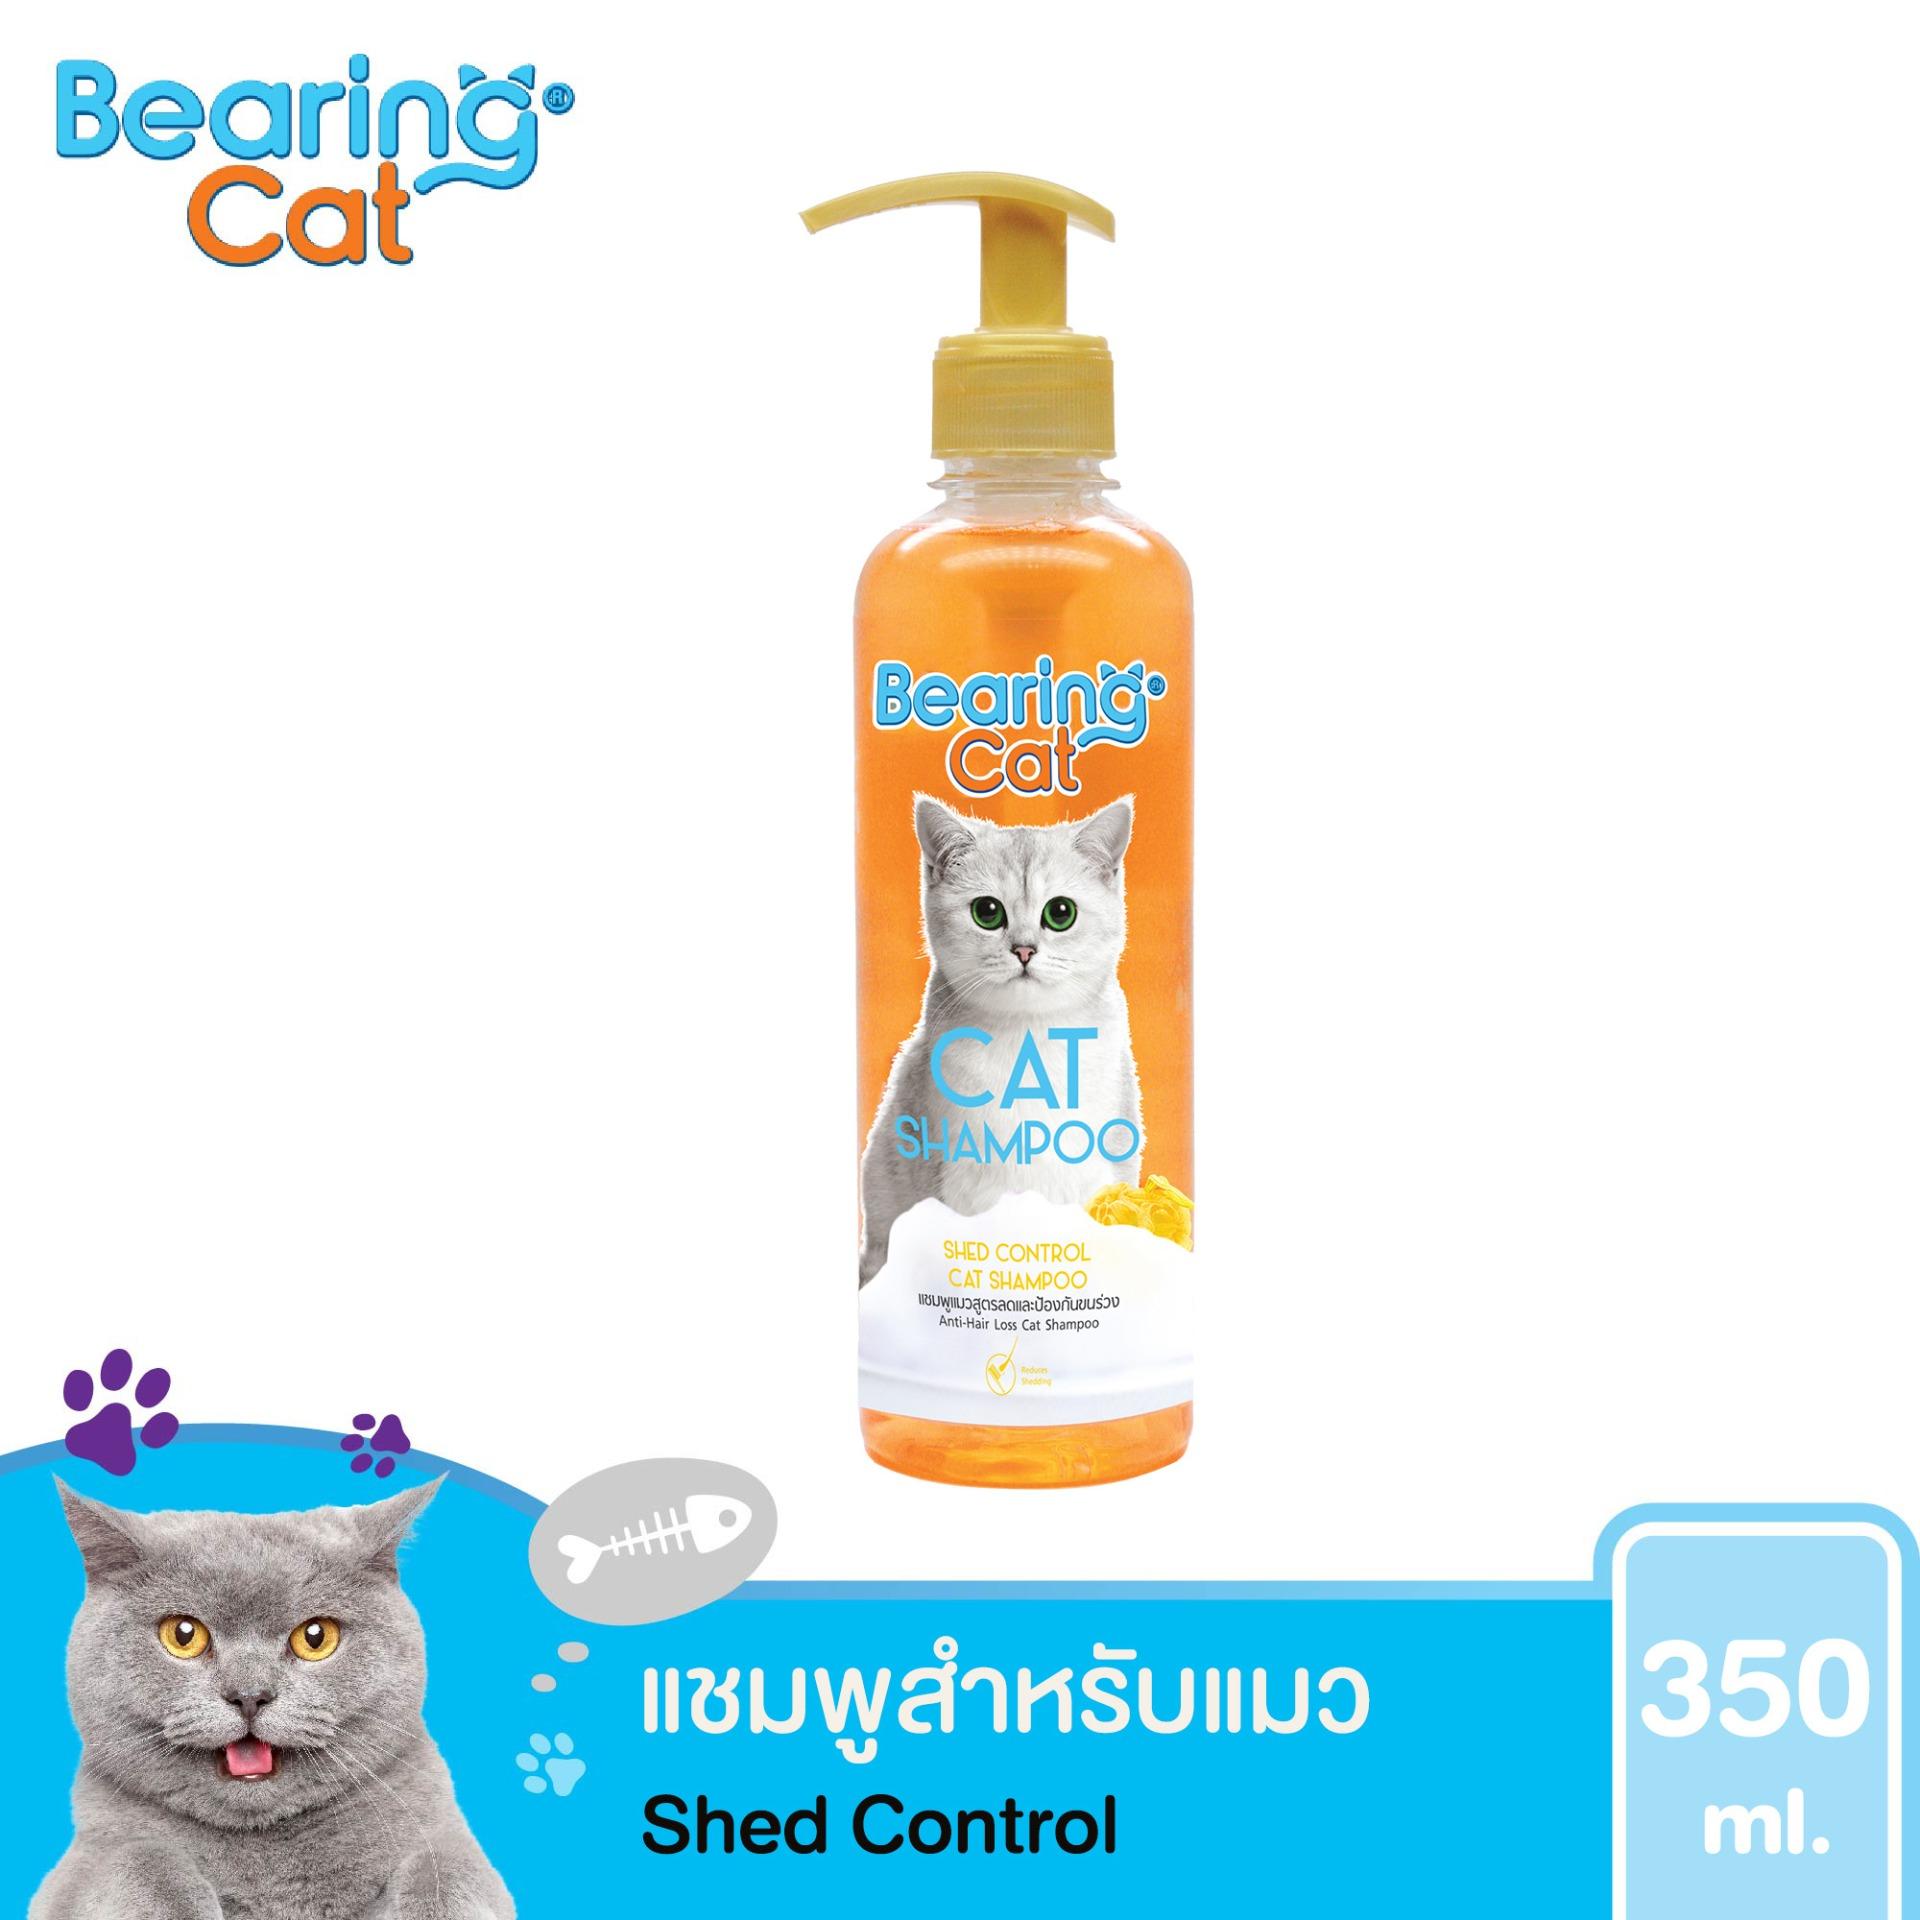 แชมพูแมว แชมพูอาบน้ำแมว แมว สำหรับแมว สูตรอ่อนโยน สำหรับแมวทุกสายพันธุ์ BEARING Cat Cat Shampoo สูตรลดและป้องกันการหลุดร่วงของขน 350 ml. (สีส้ม)